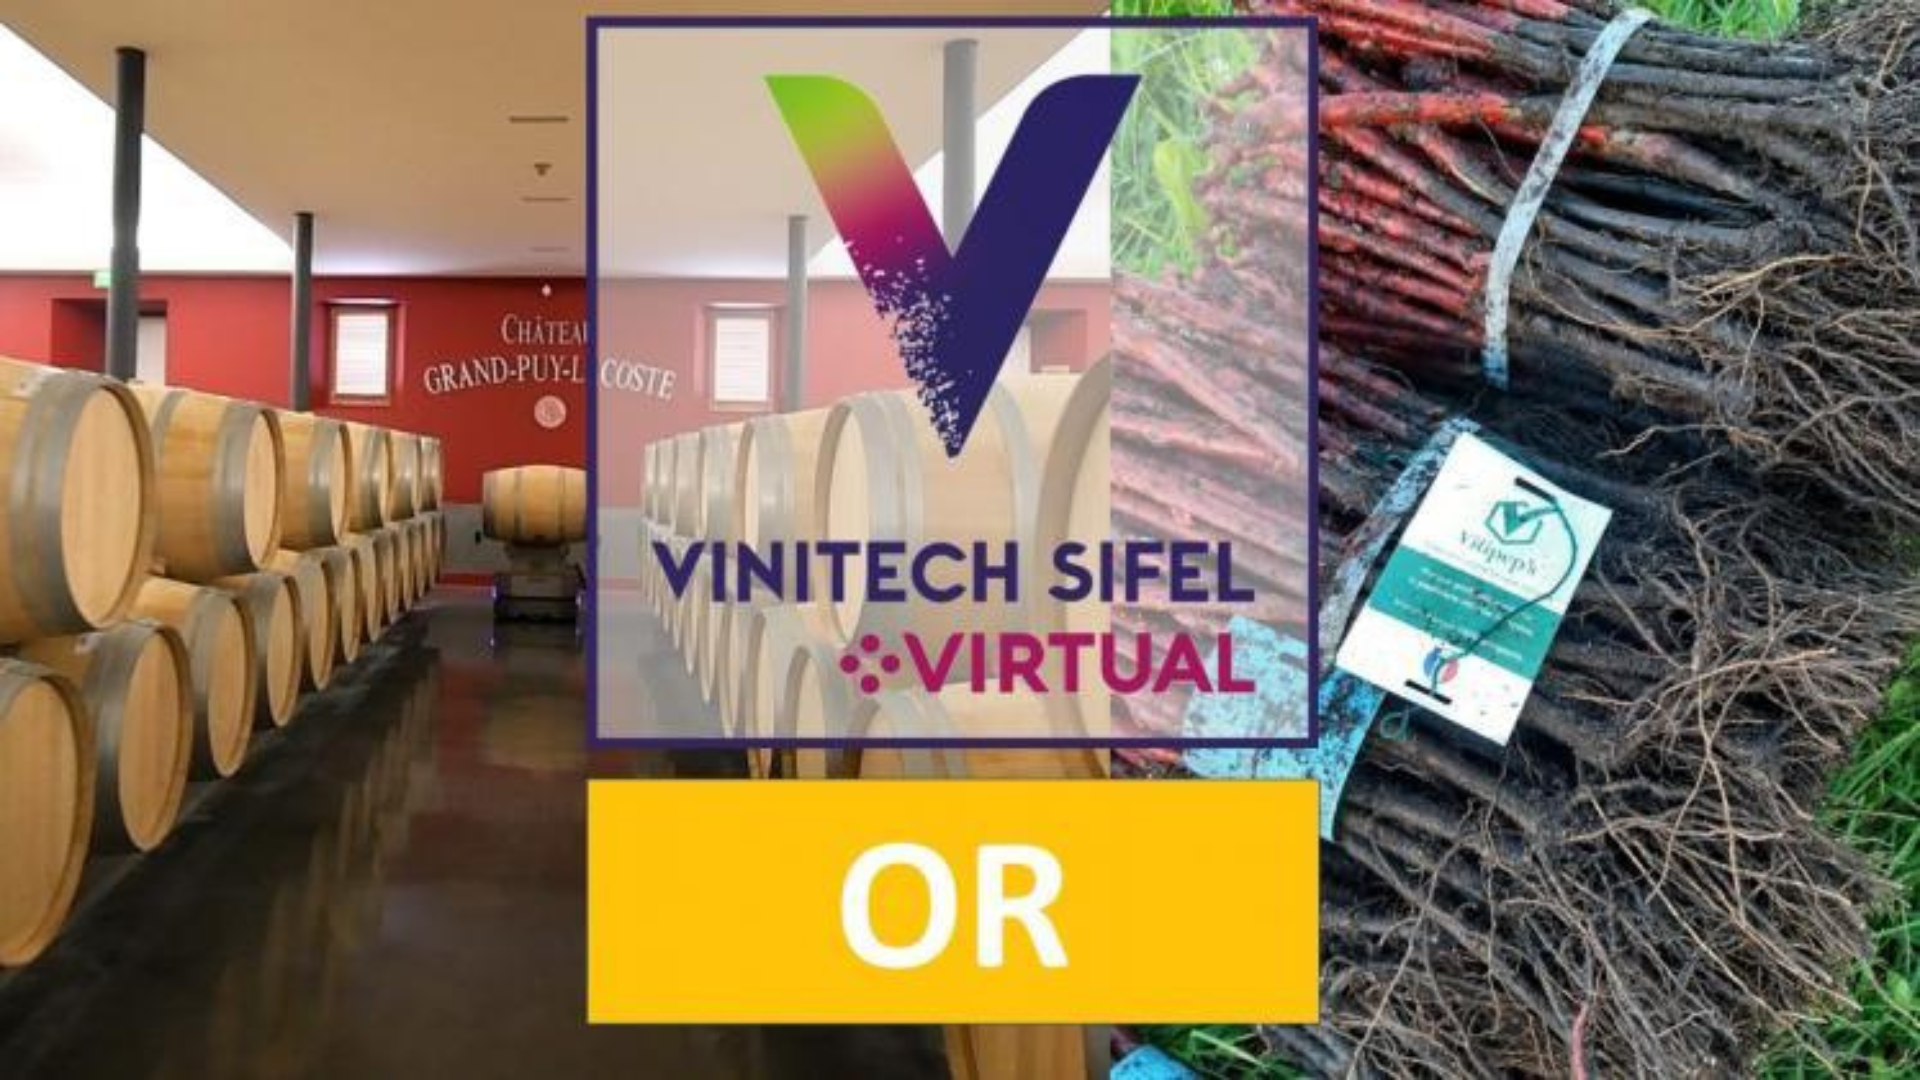 Vitipep’s remporte le trophée OR de l’Innovation Vinitech-Sifel 2020